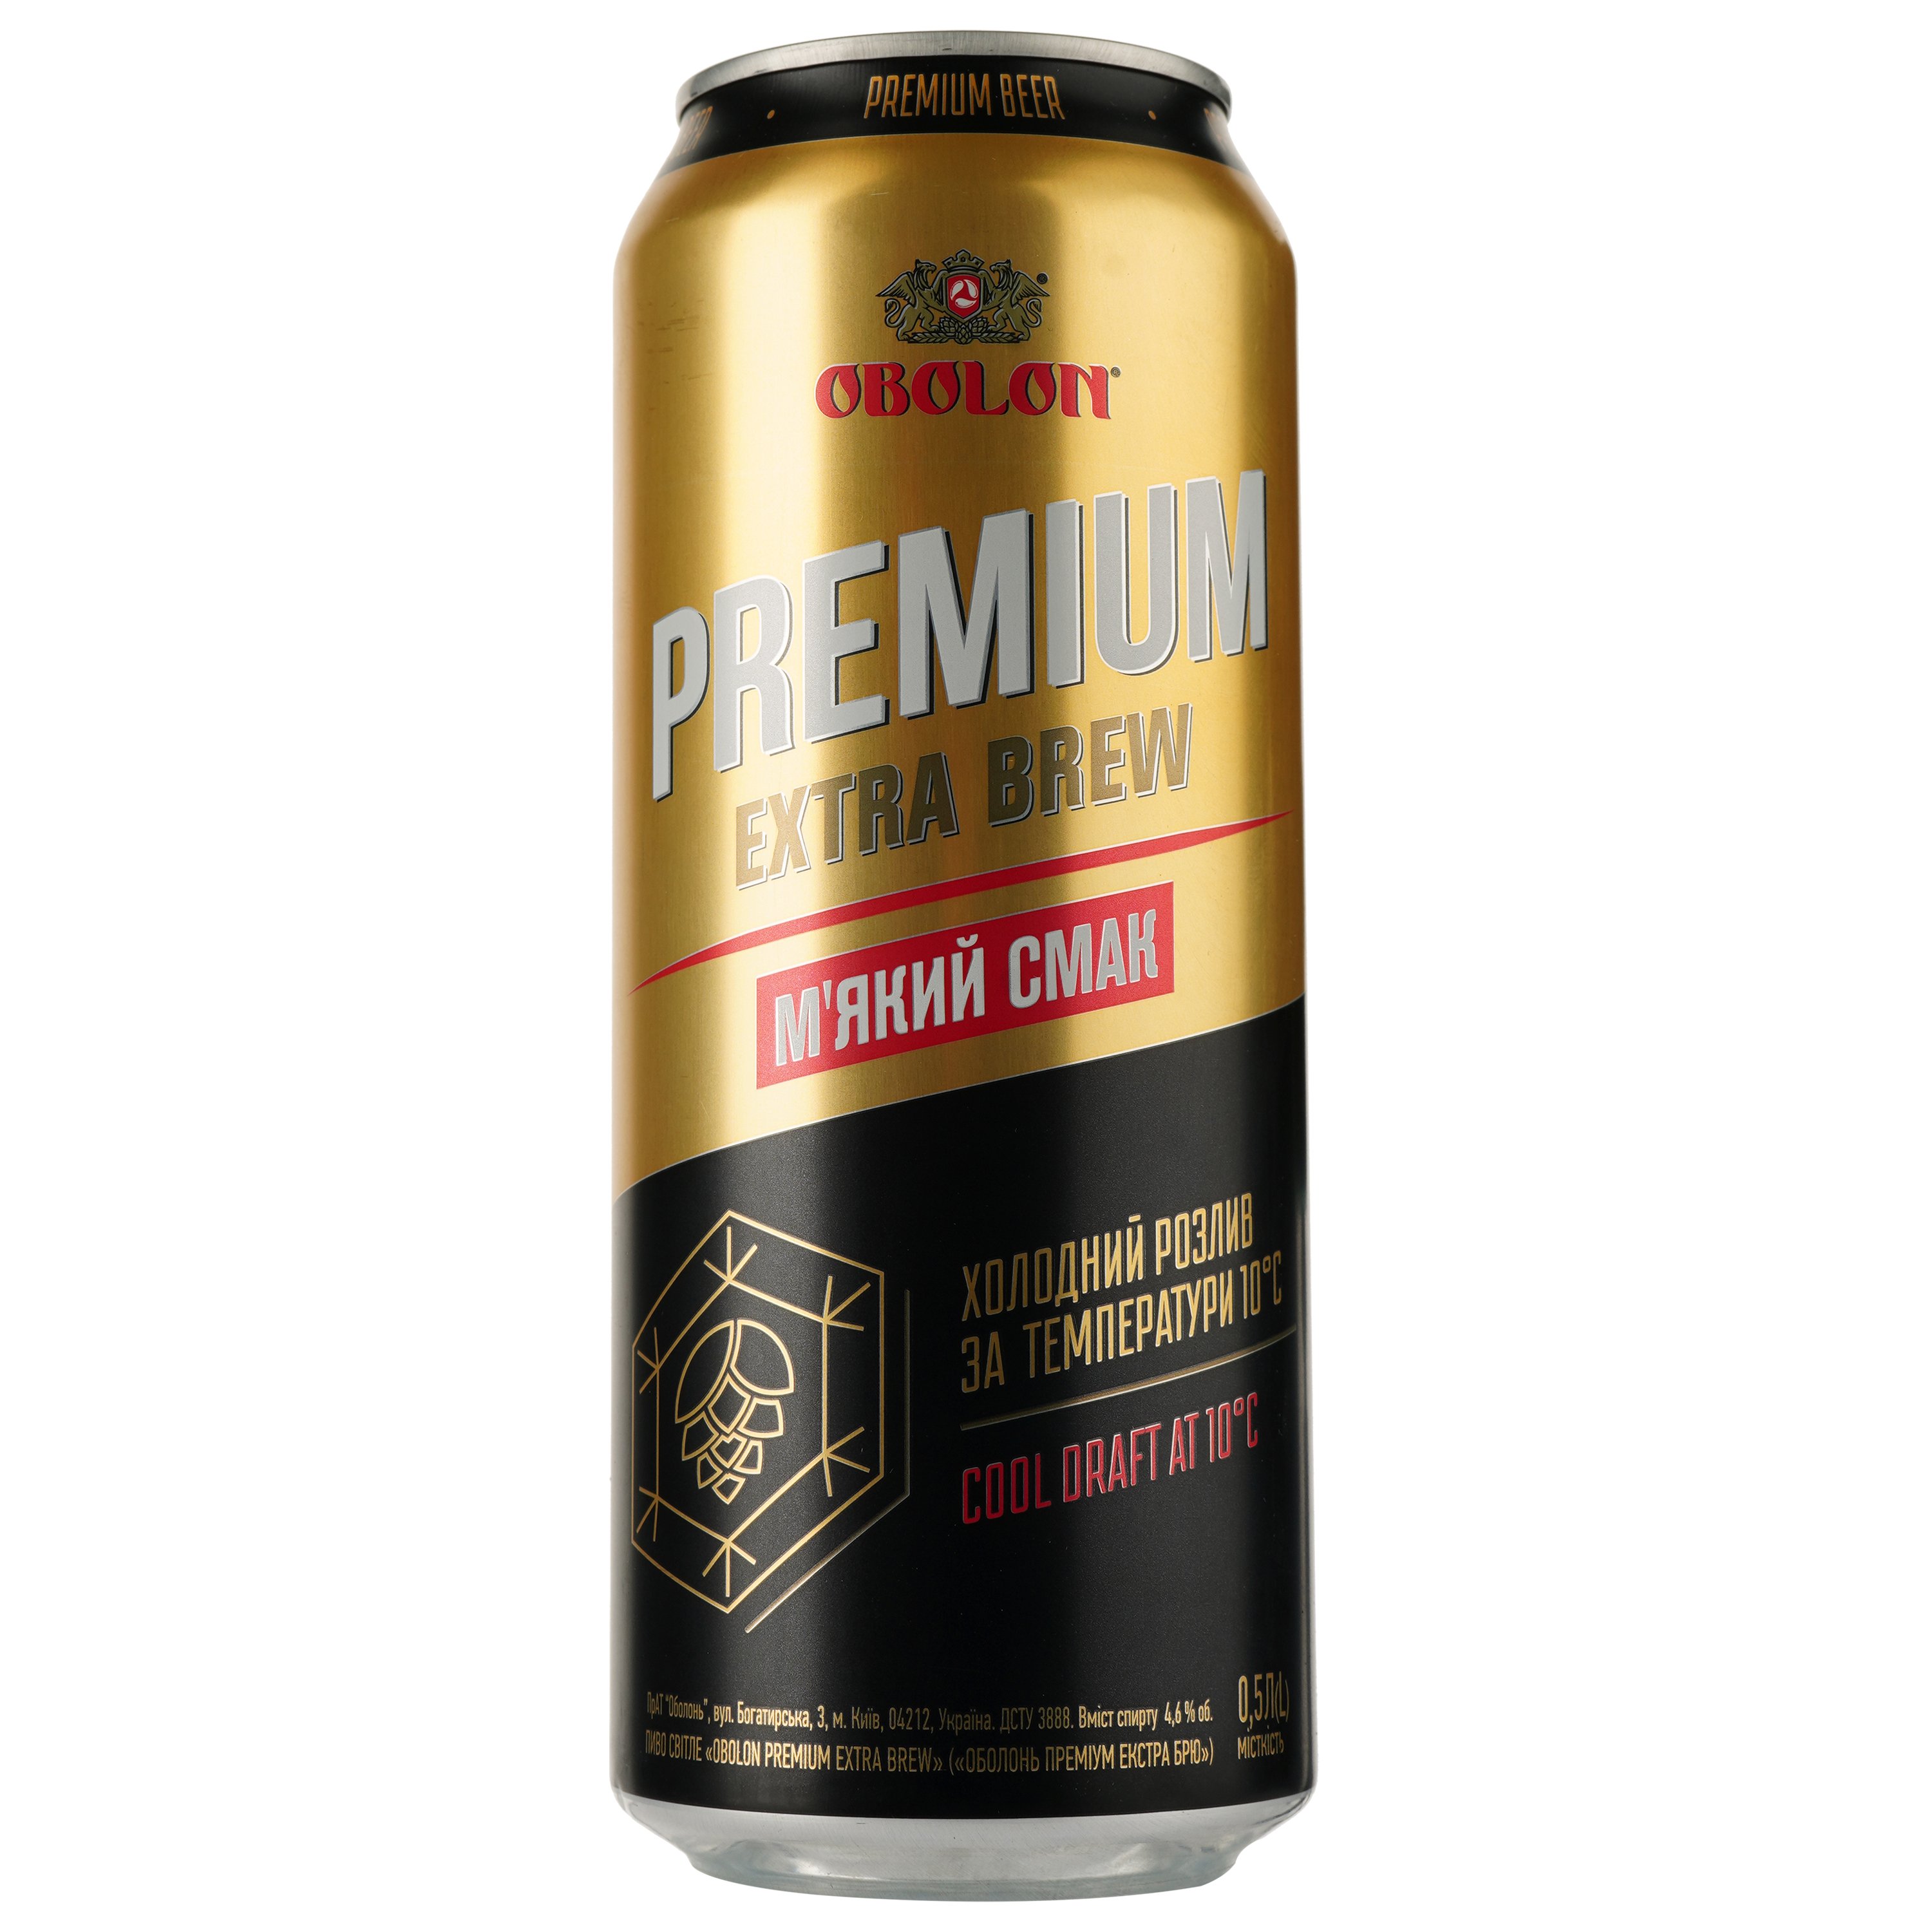 Пиво Оболонь Premium Extra Brew, светлое, фильтрованное, 4,6%, ж/б, 0,5 л (805168) - фото 1